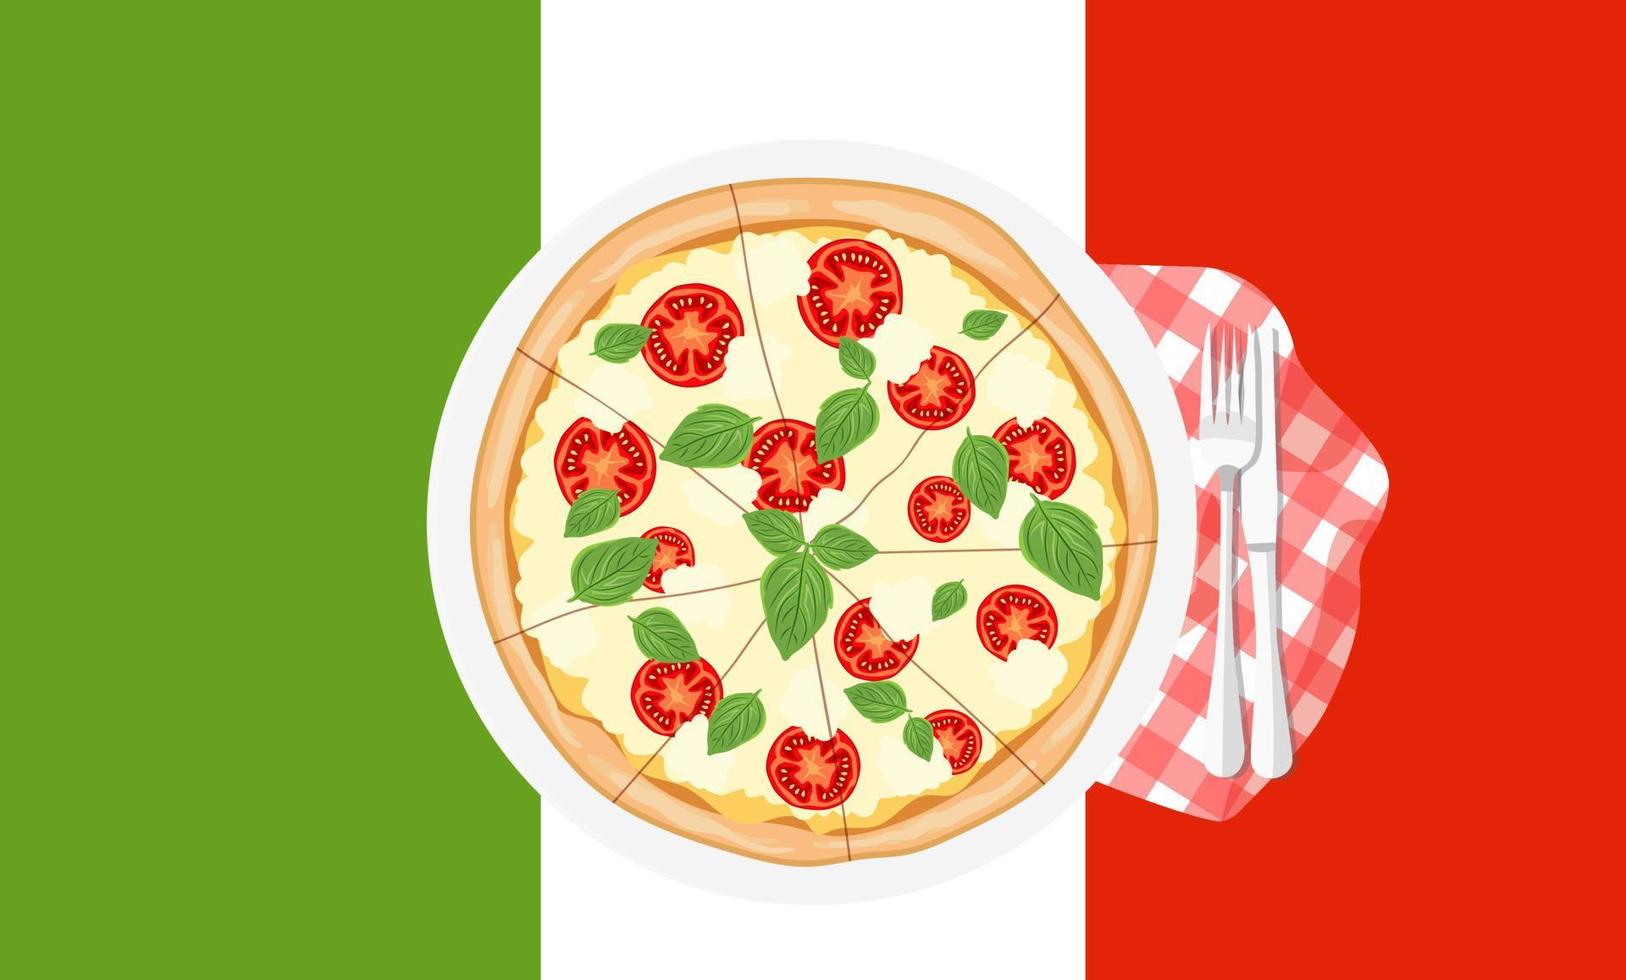 margarita de pizza quente no fundo da bandeira italiana. fast-food italiano. lanche da Itália com tomate, manjericão e queijo mussarela. ilustração vetorial plana vetor